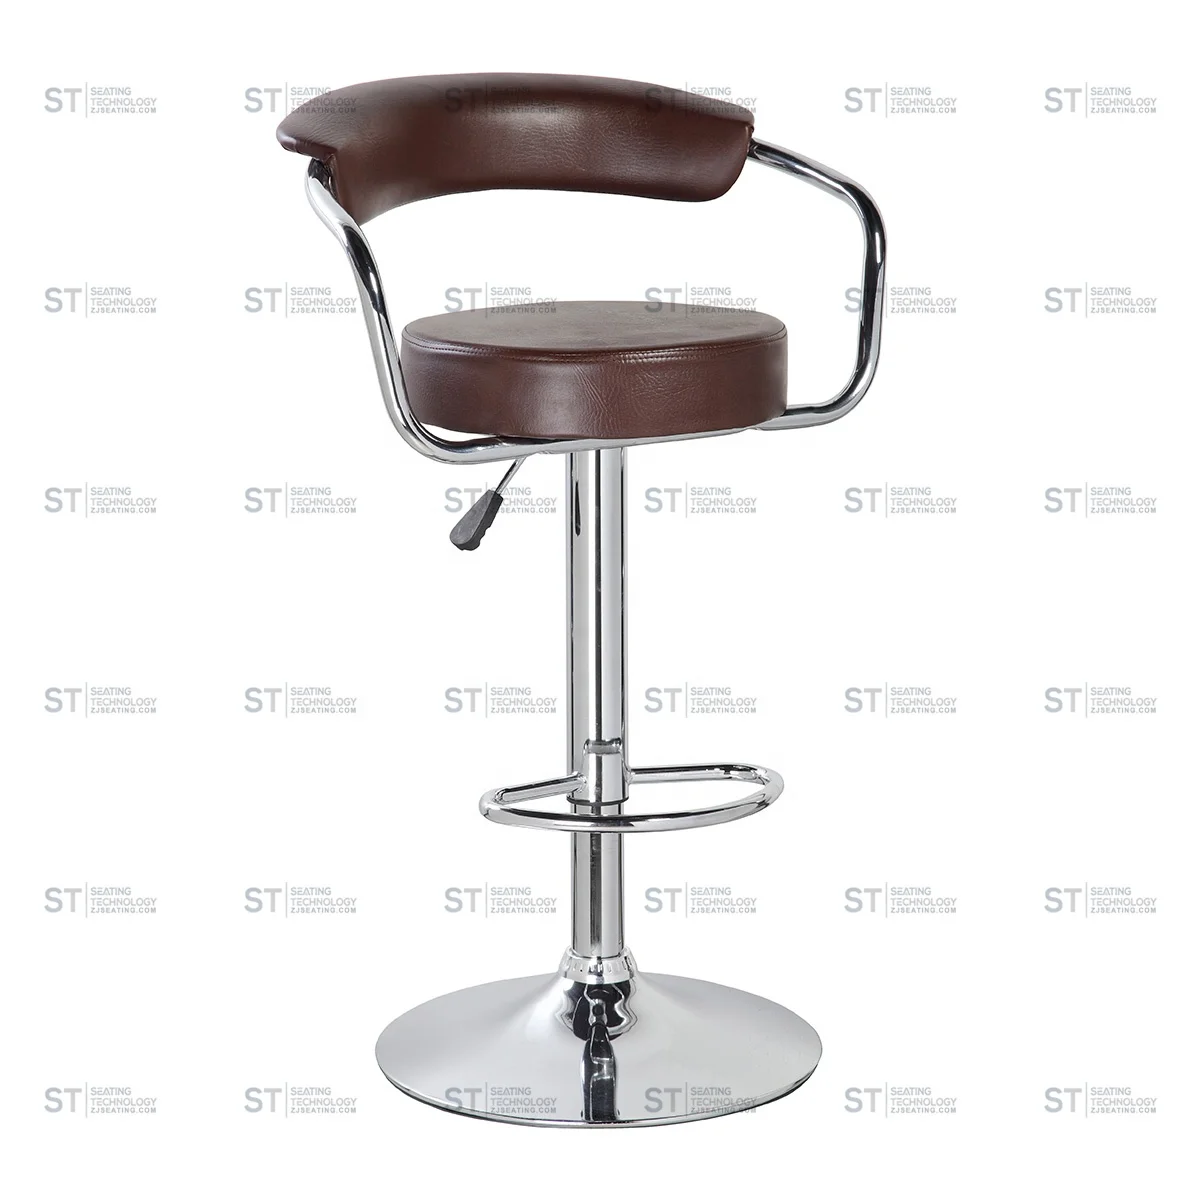 Новая фабричная ультра-дешевая оптовая цена из искусственной кожи ST 5009 современная кухня для стула барные стулья